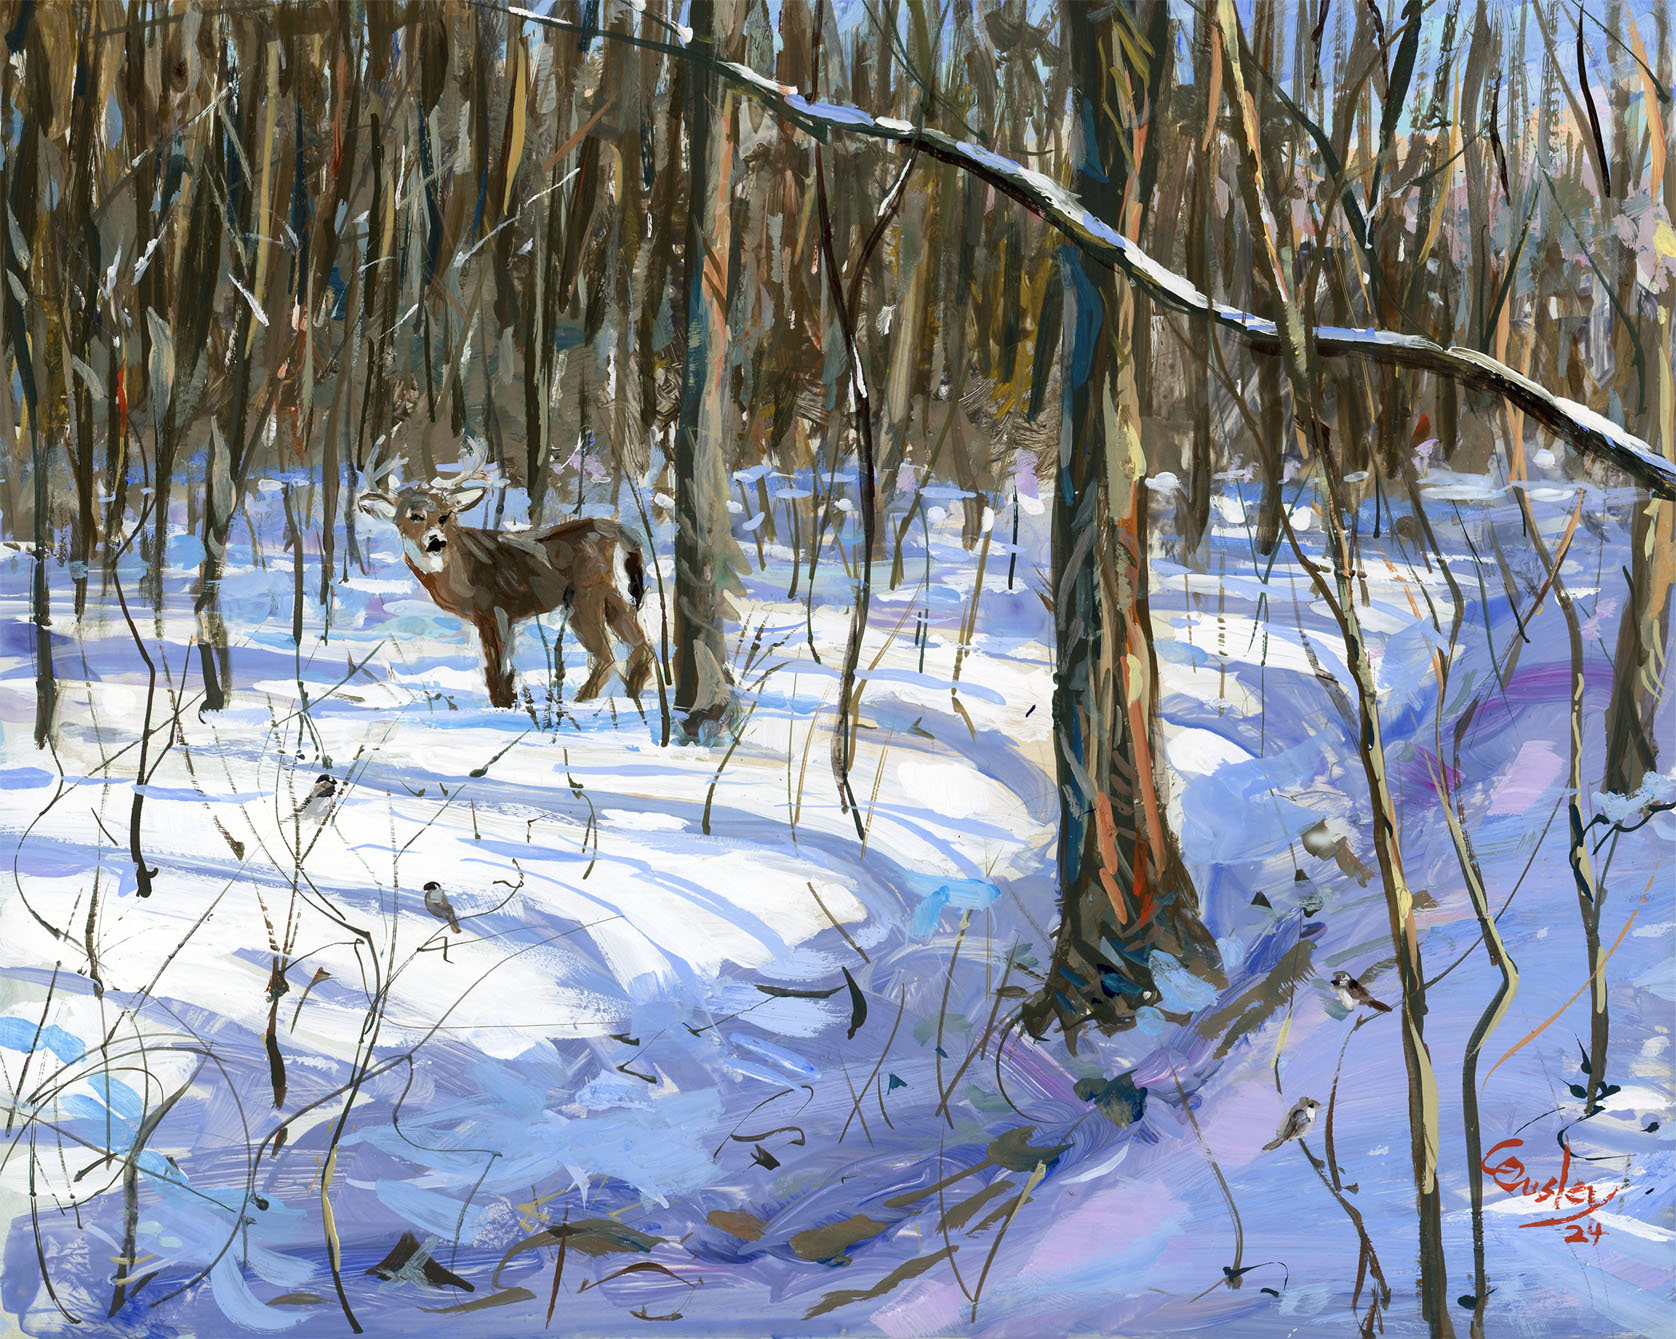 Deer in the Snowy Woods